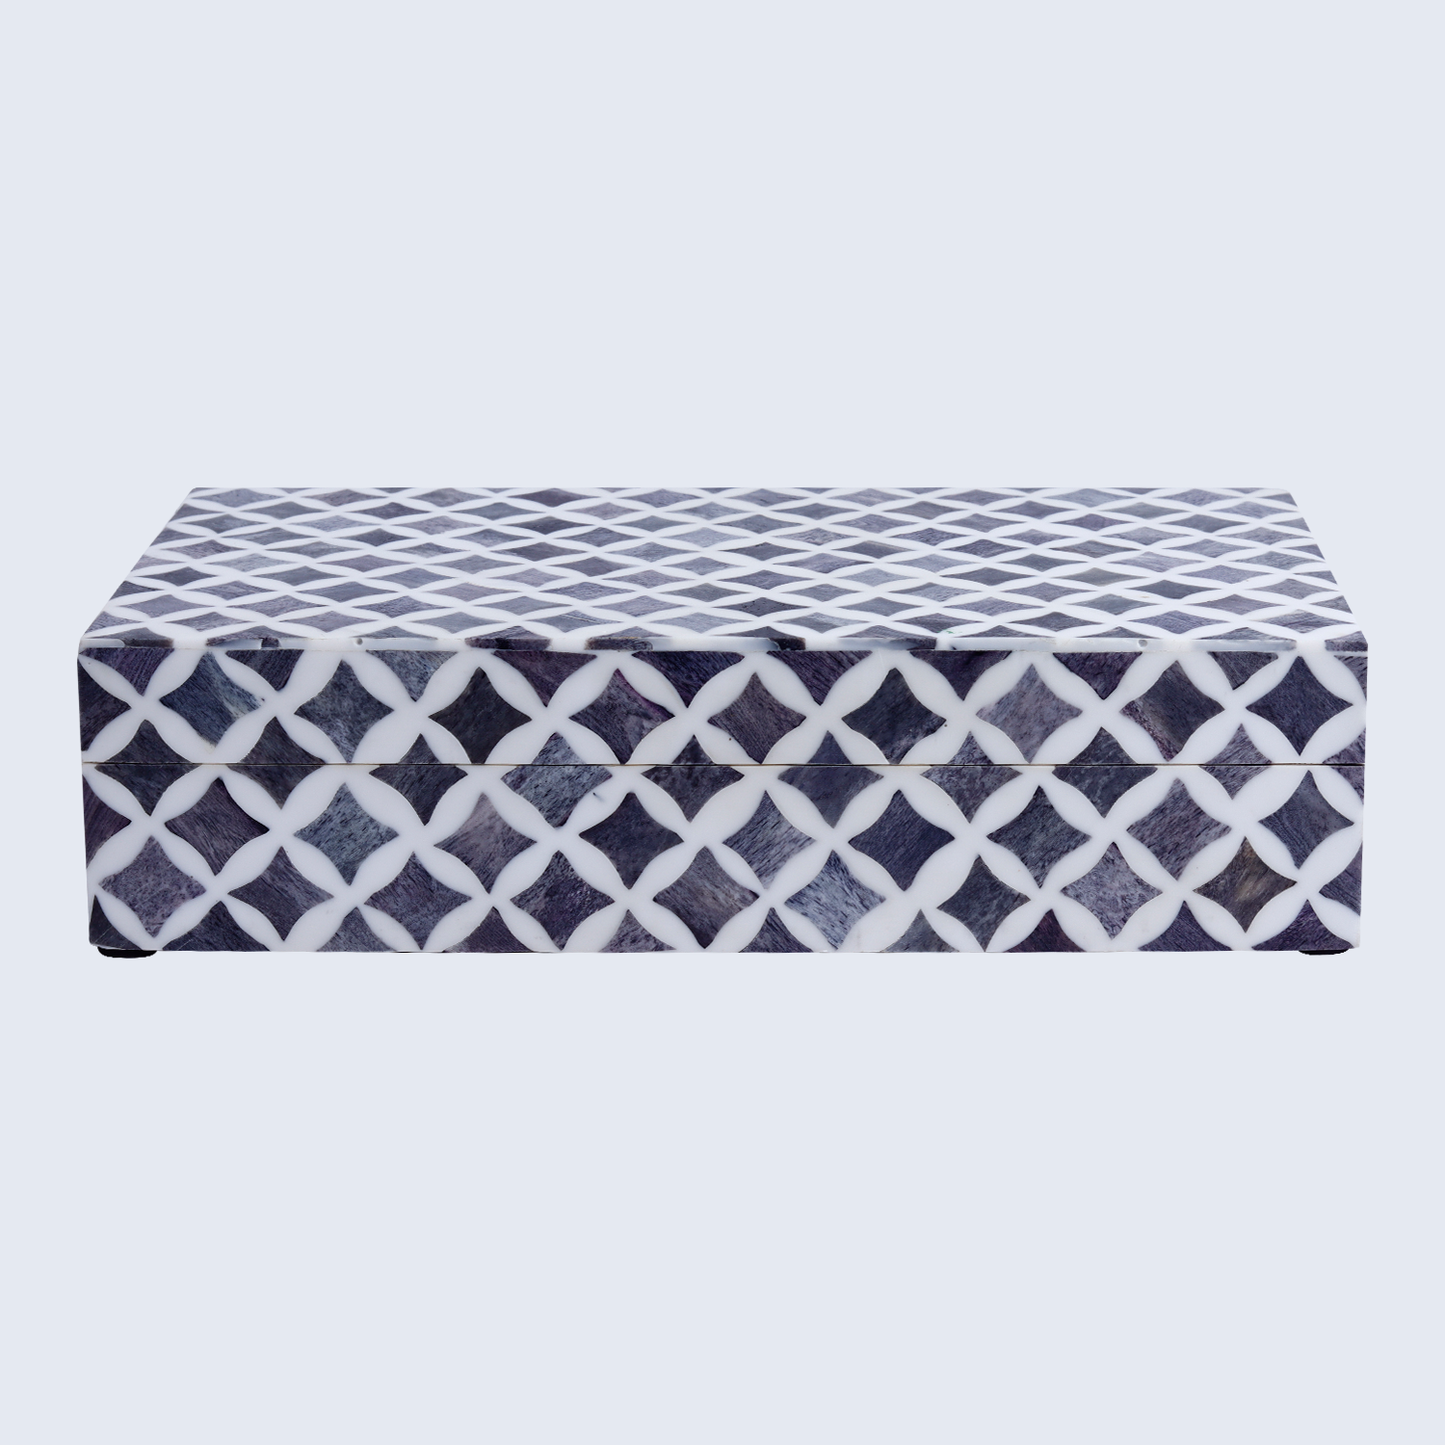 Decorative Box Star Slate White & Grey 10x6x2.5 Inch